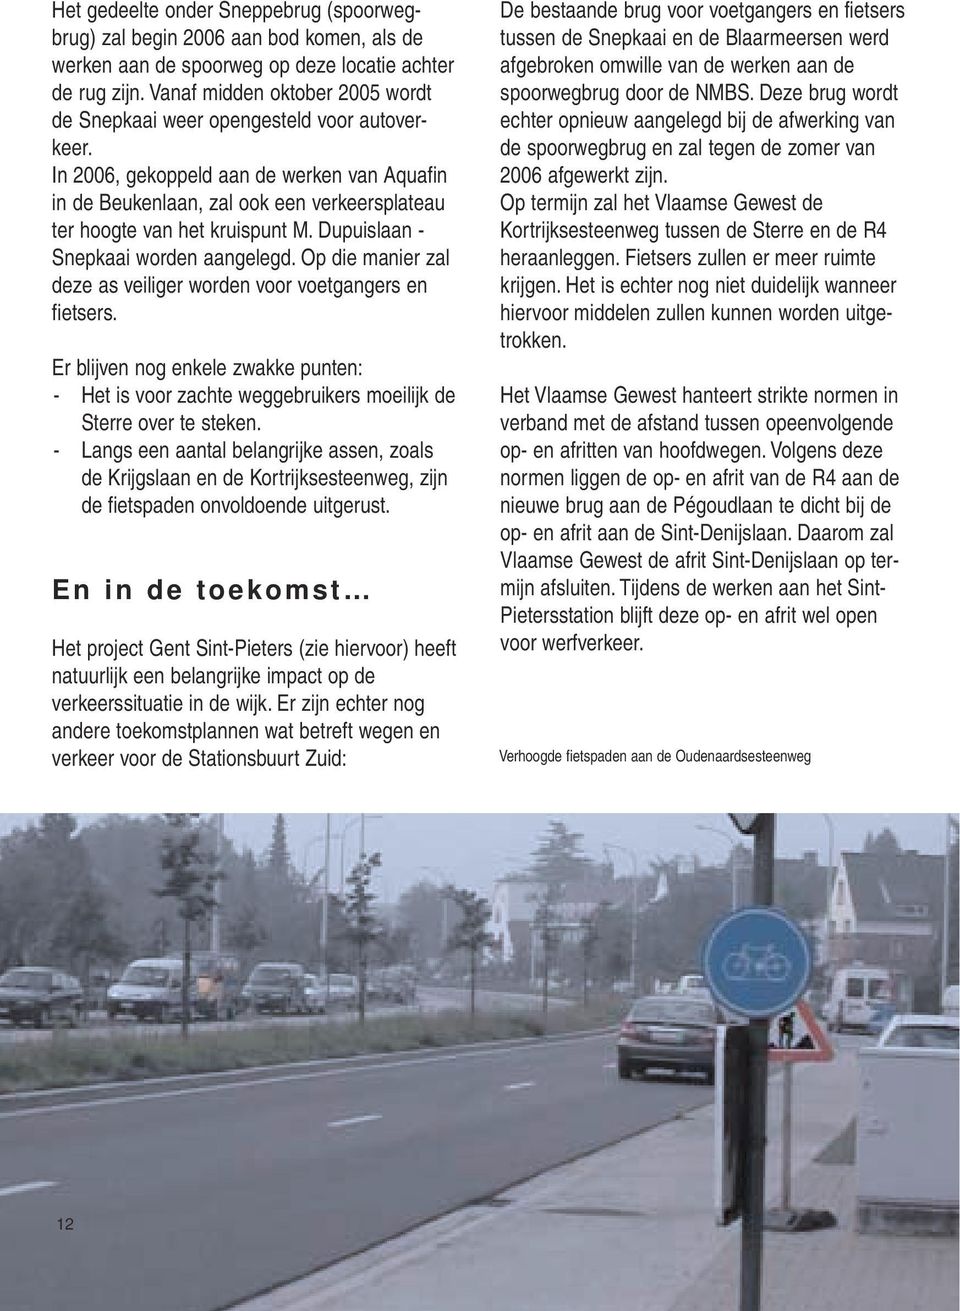 In 2006, gekoppeld aan de werken van Aquafin in de Beukenlaan, zal ook een verkeersplateau ter hoogte van het kruispunt M. Dupuislaan - Snepkaai worden aangelegd.